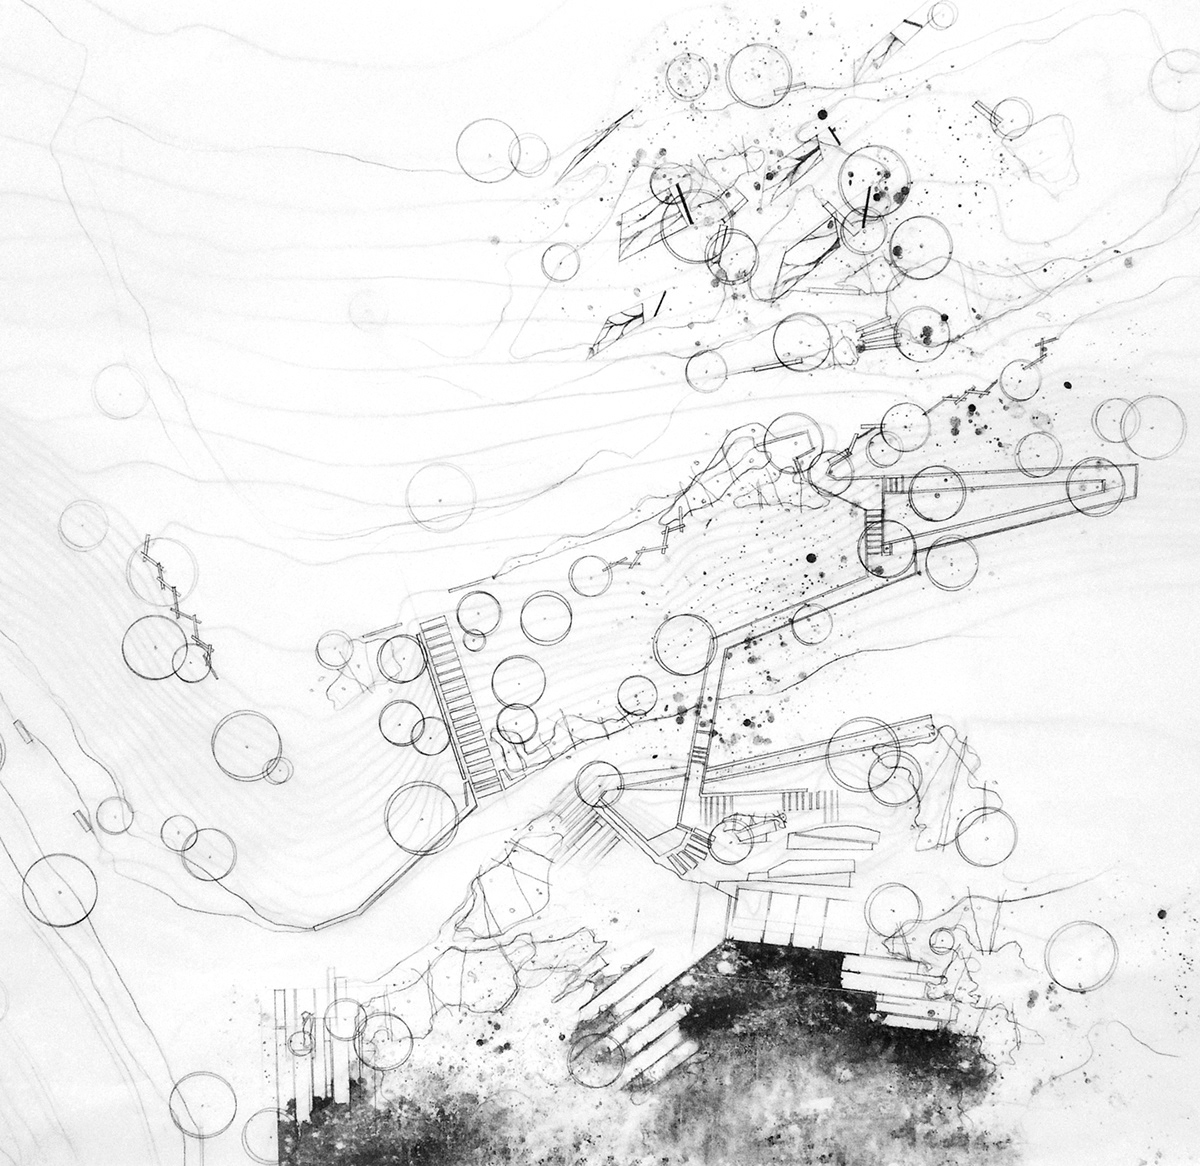 Design Principles Studio waterfront experiential map sculpture modeling watercolor Landscape Landscape Architecture 